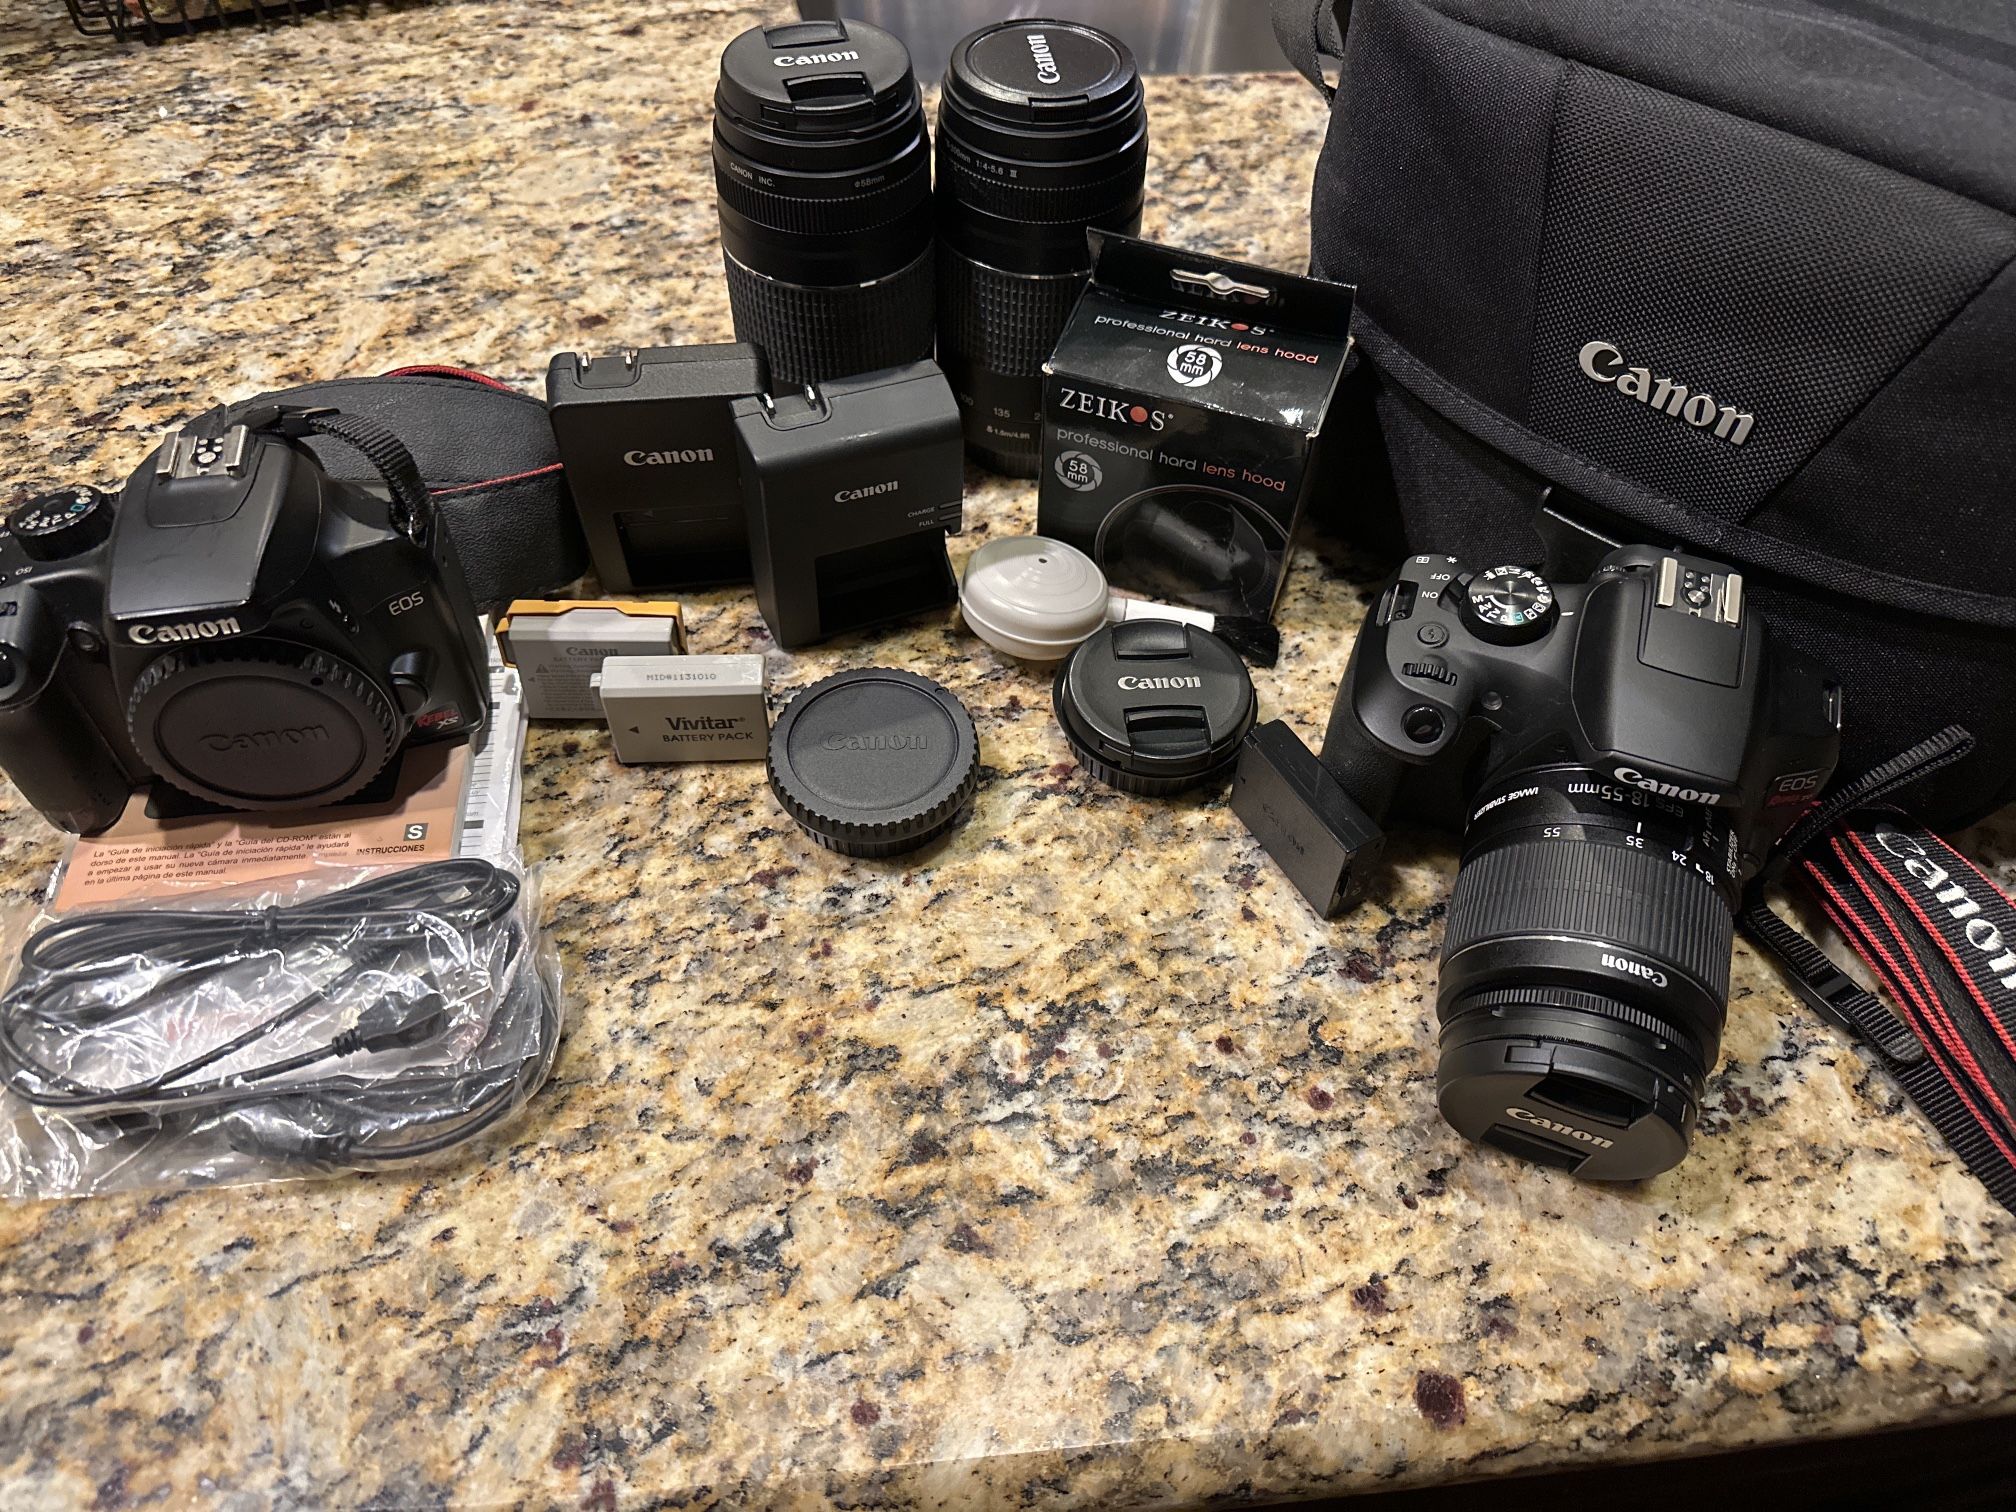 Canon Cameras + Accessories